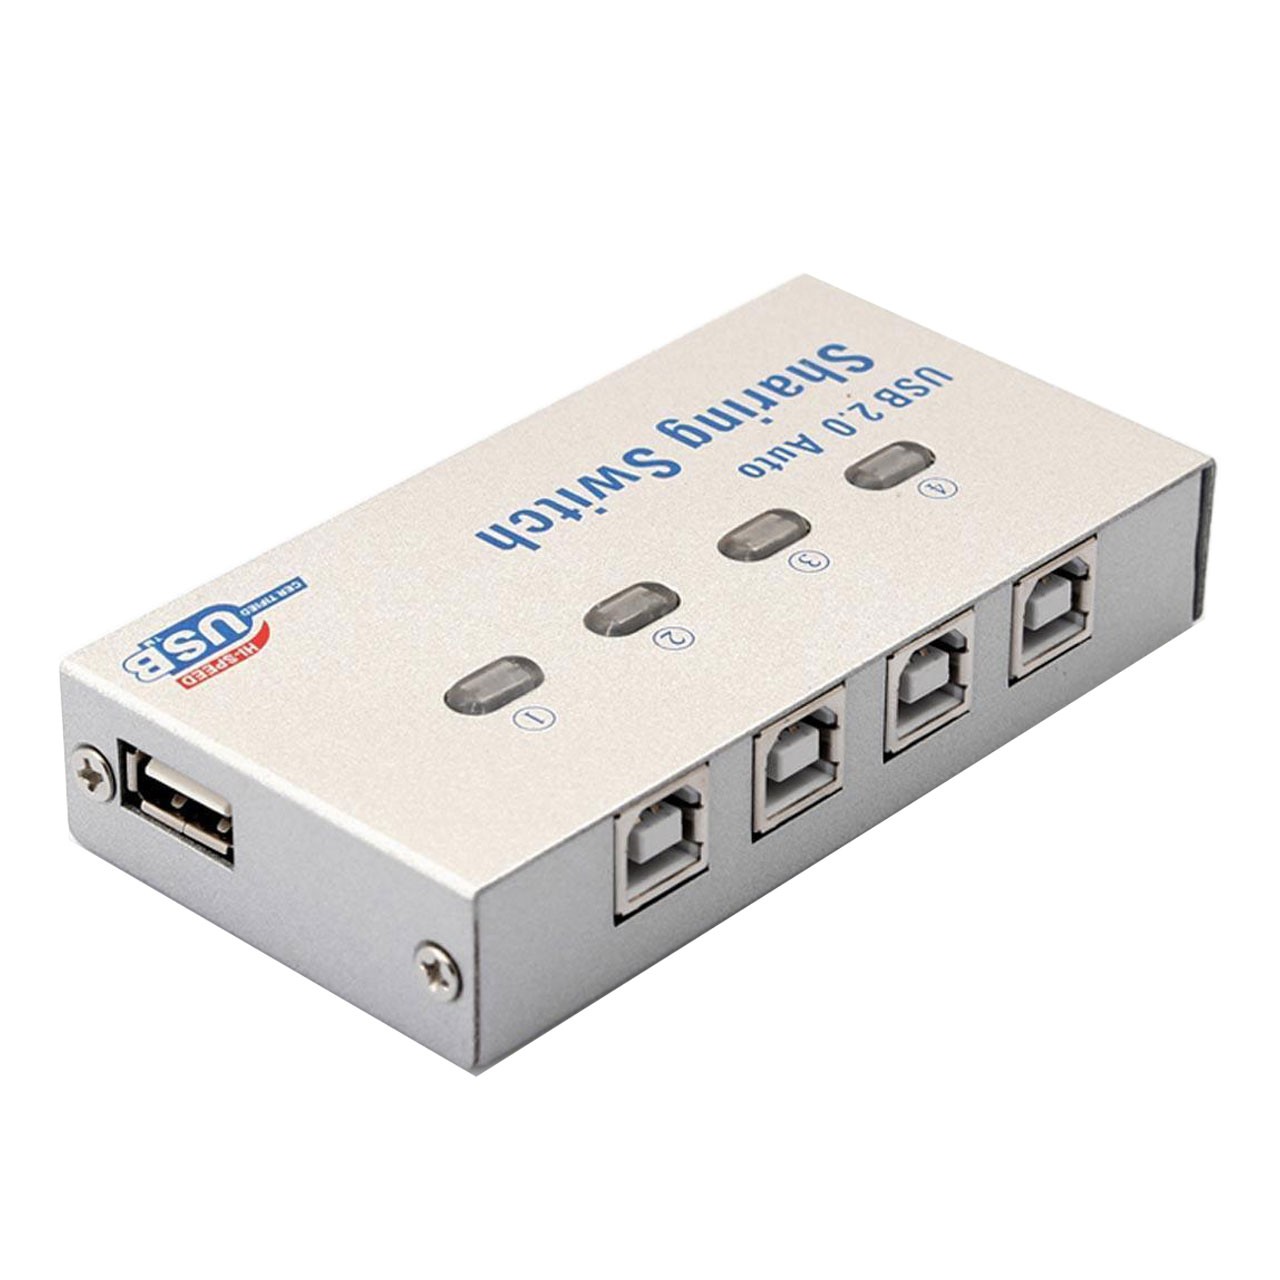 دیتا سوییچ اتوماتیک 4 به 1 USB 

4 Port USB 2.0 Auto Sharing Switch box